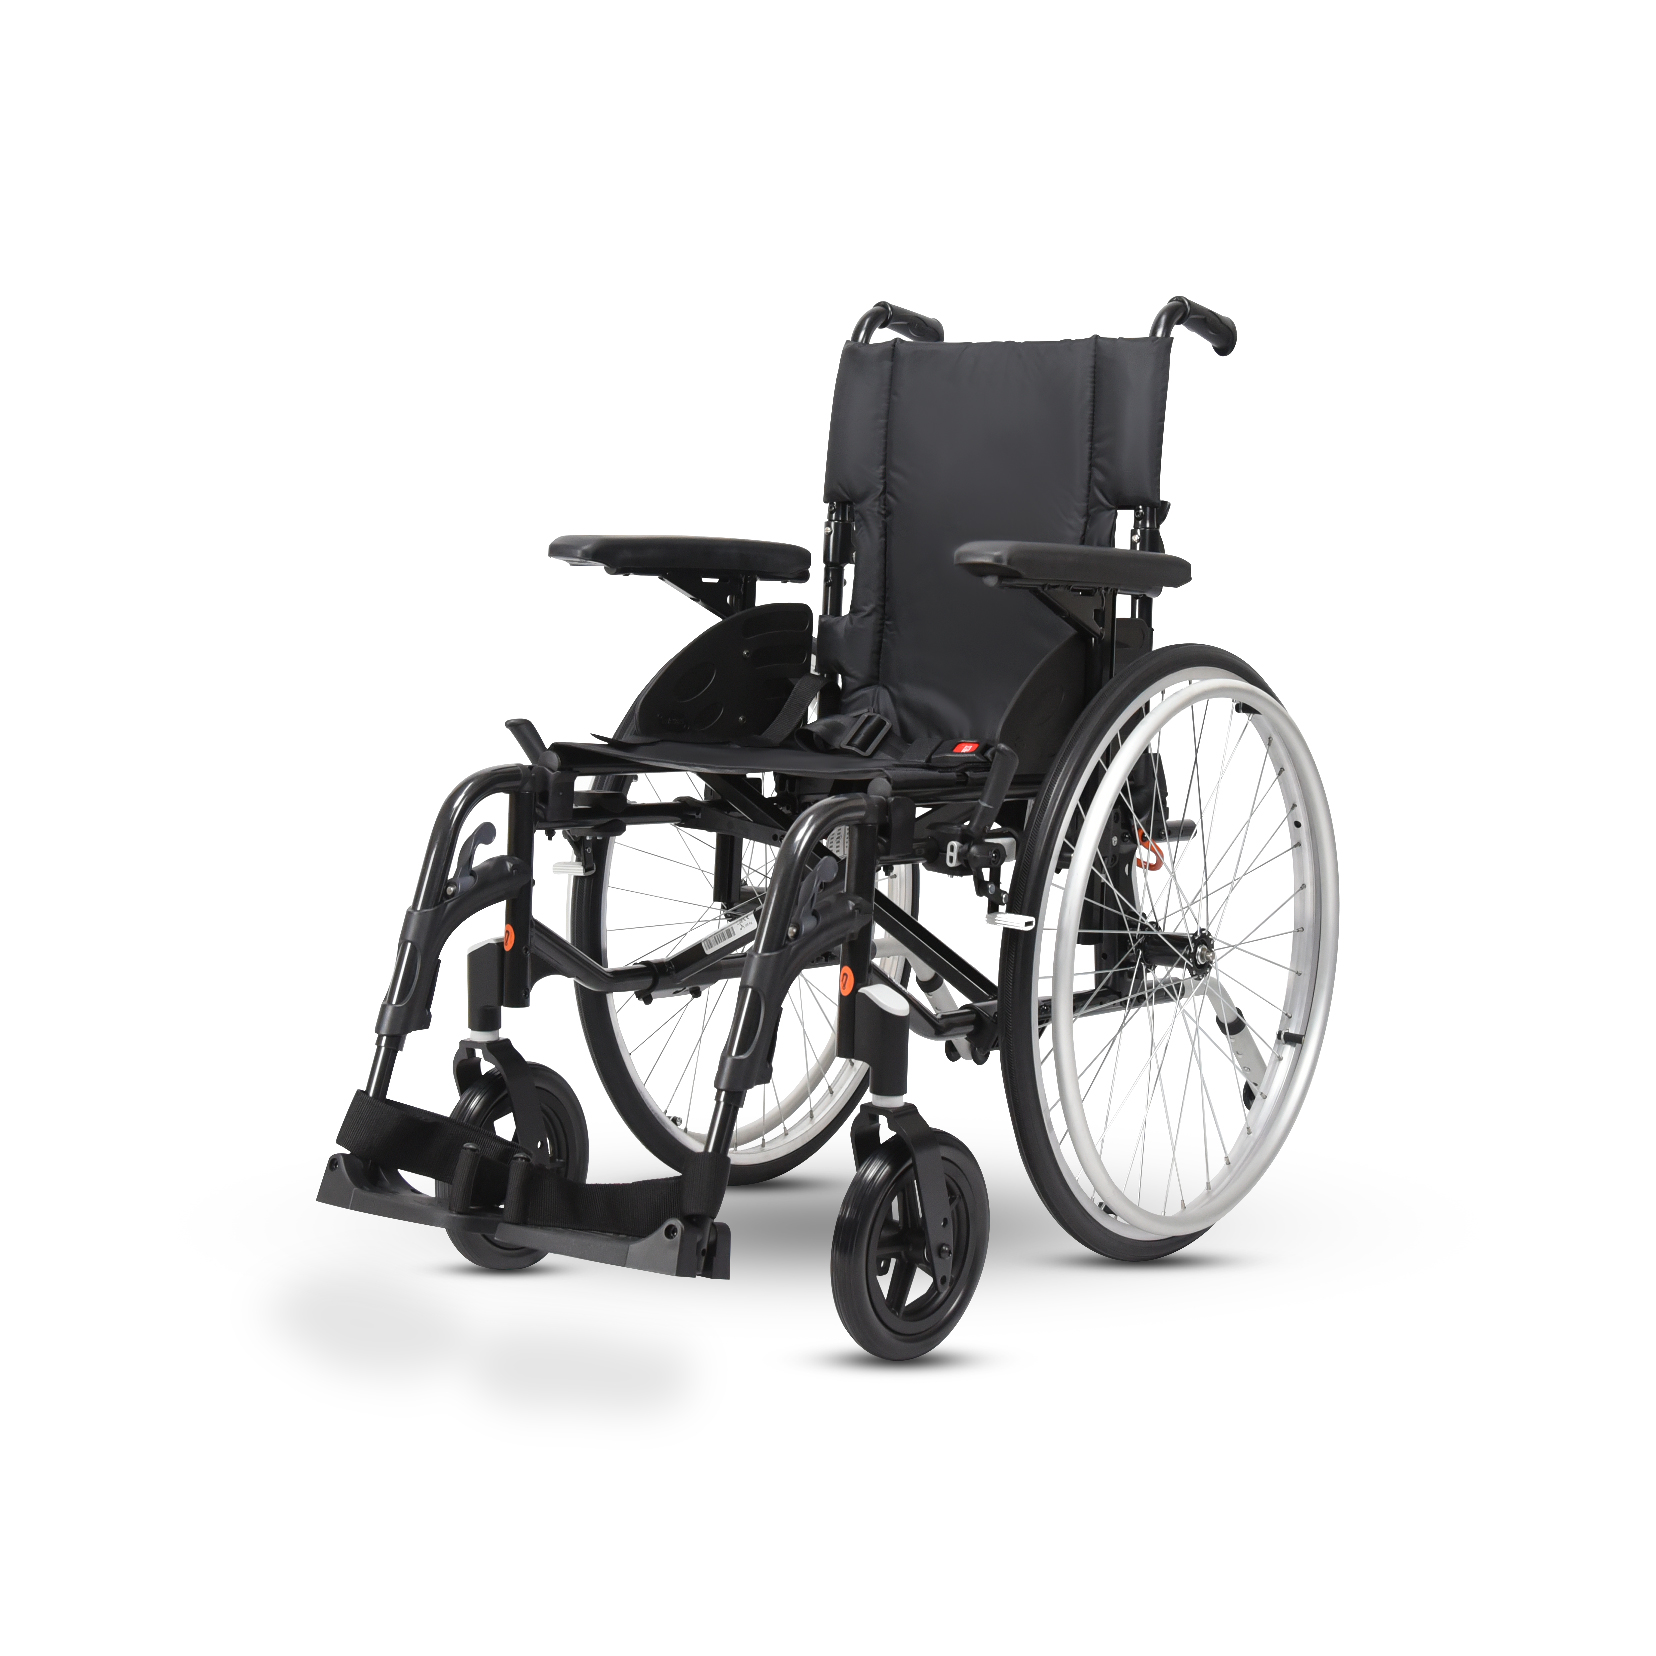 วีลแชร์ผู้สูงอายุ แบบแมนนวล พับได้ ยี่ห้อ Invacare รุ่น Action 2NG ล้อใหญ่ (Manual Wheelchair) รับประกัน 2 ปี